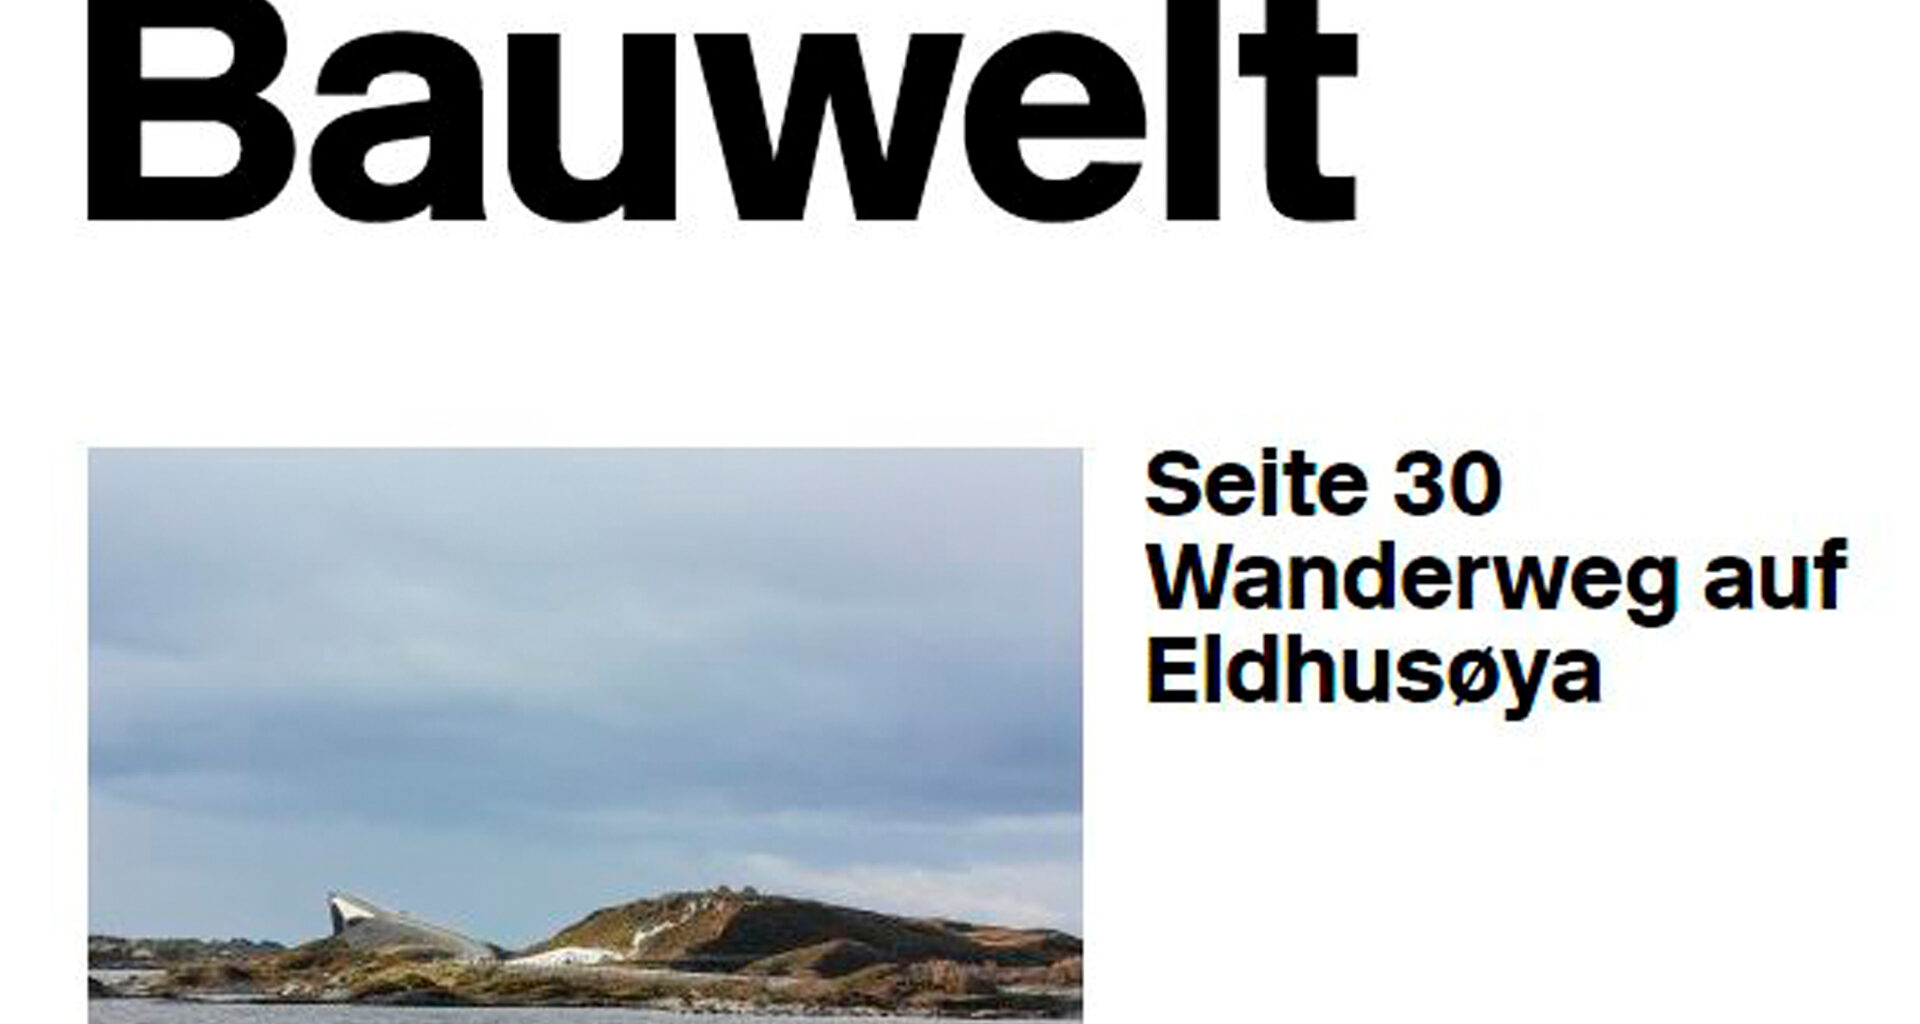 Eldhusøya i Bauwelt Magazine